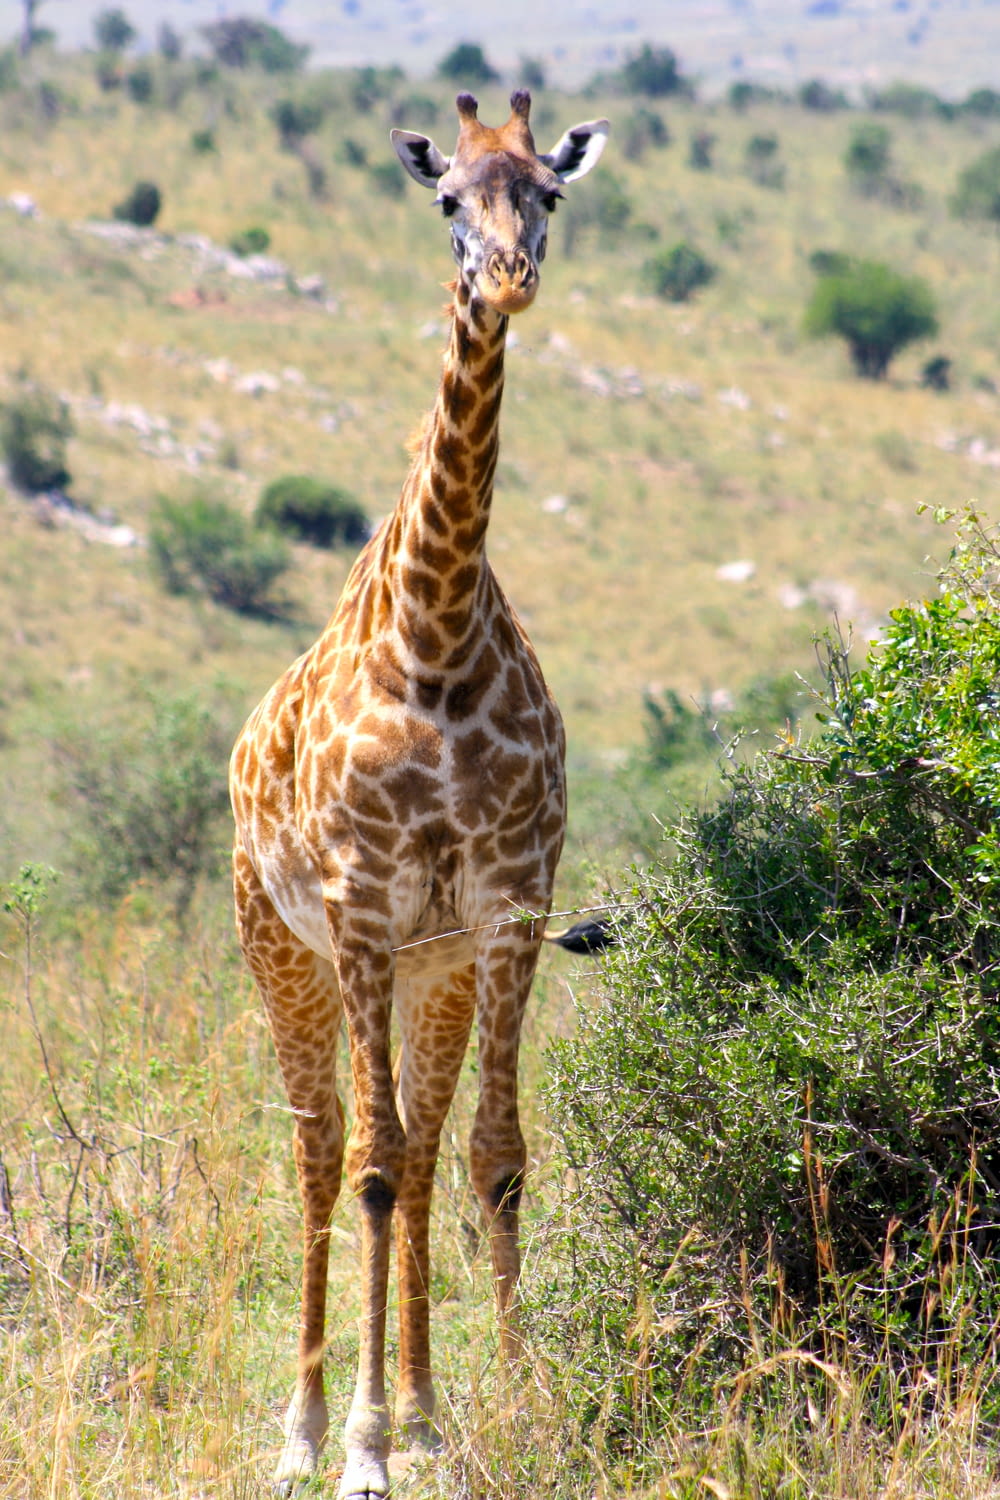 a giraffe standing in a field of tall grass